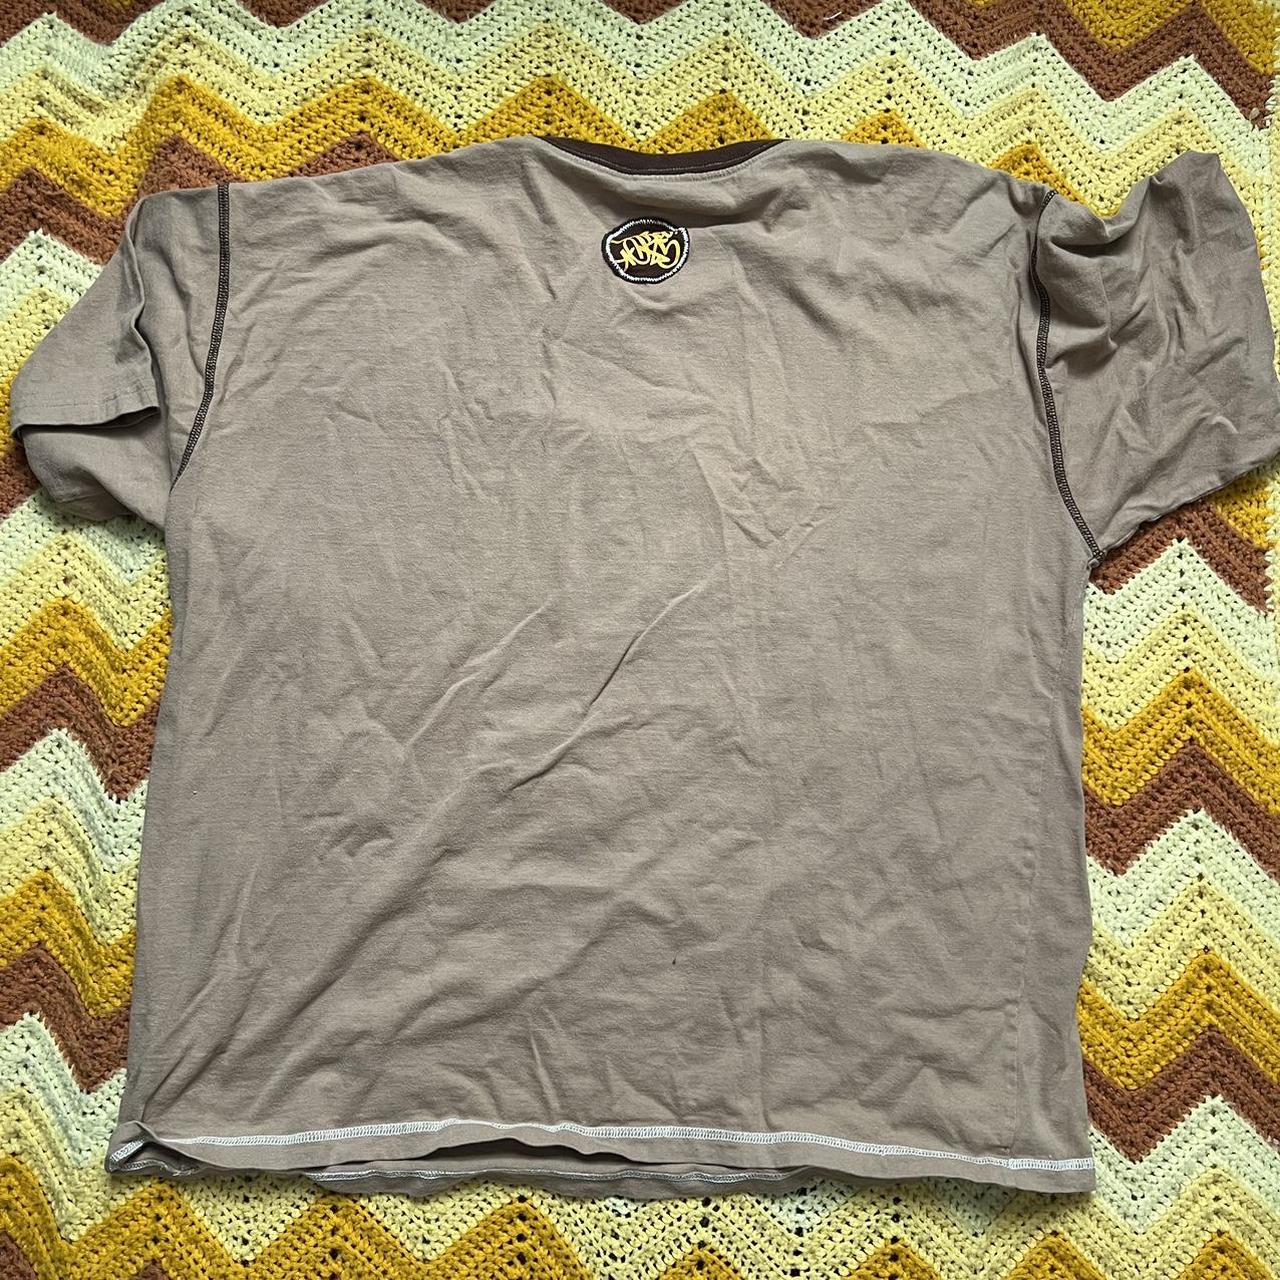 JNCO Men's Tan and Brown T-shirt | Depop